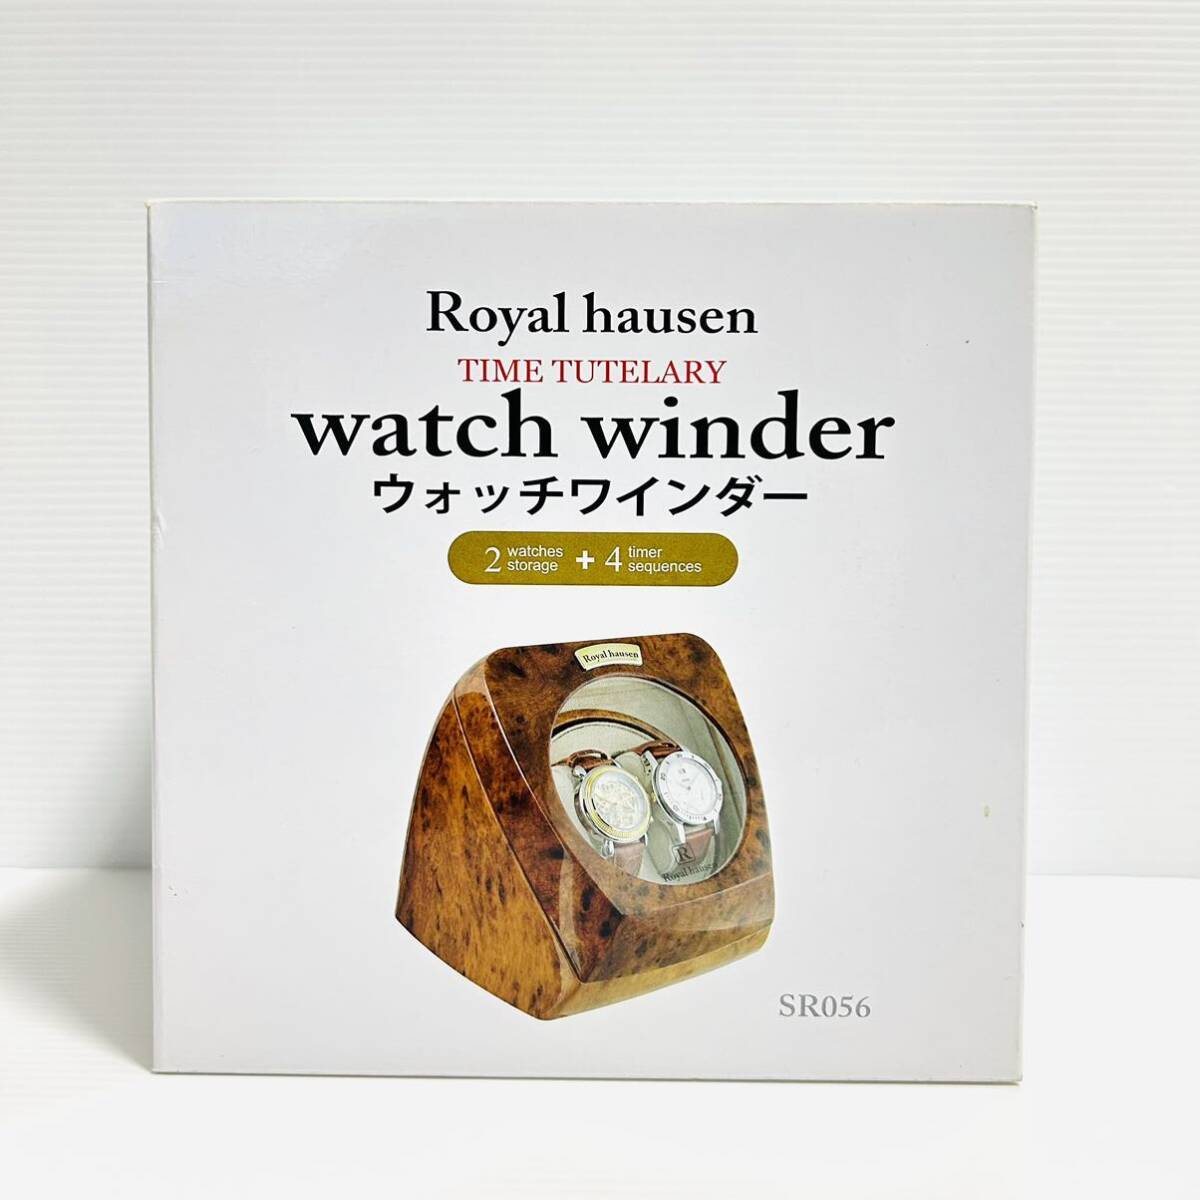 【未使用品】 Royal hausen ロイヤルハウゼン SR056 ウォッチワインダー 腕時計 自動巻き上げ機の画像1